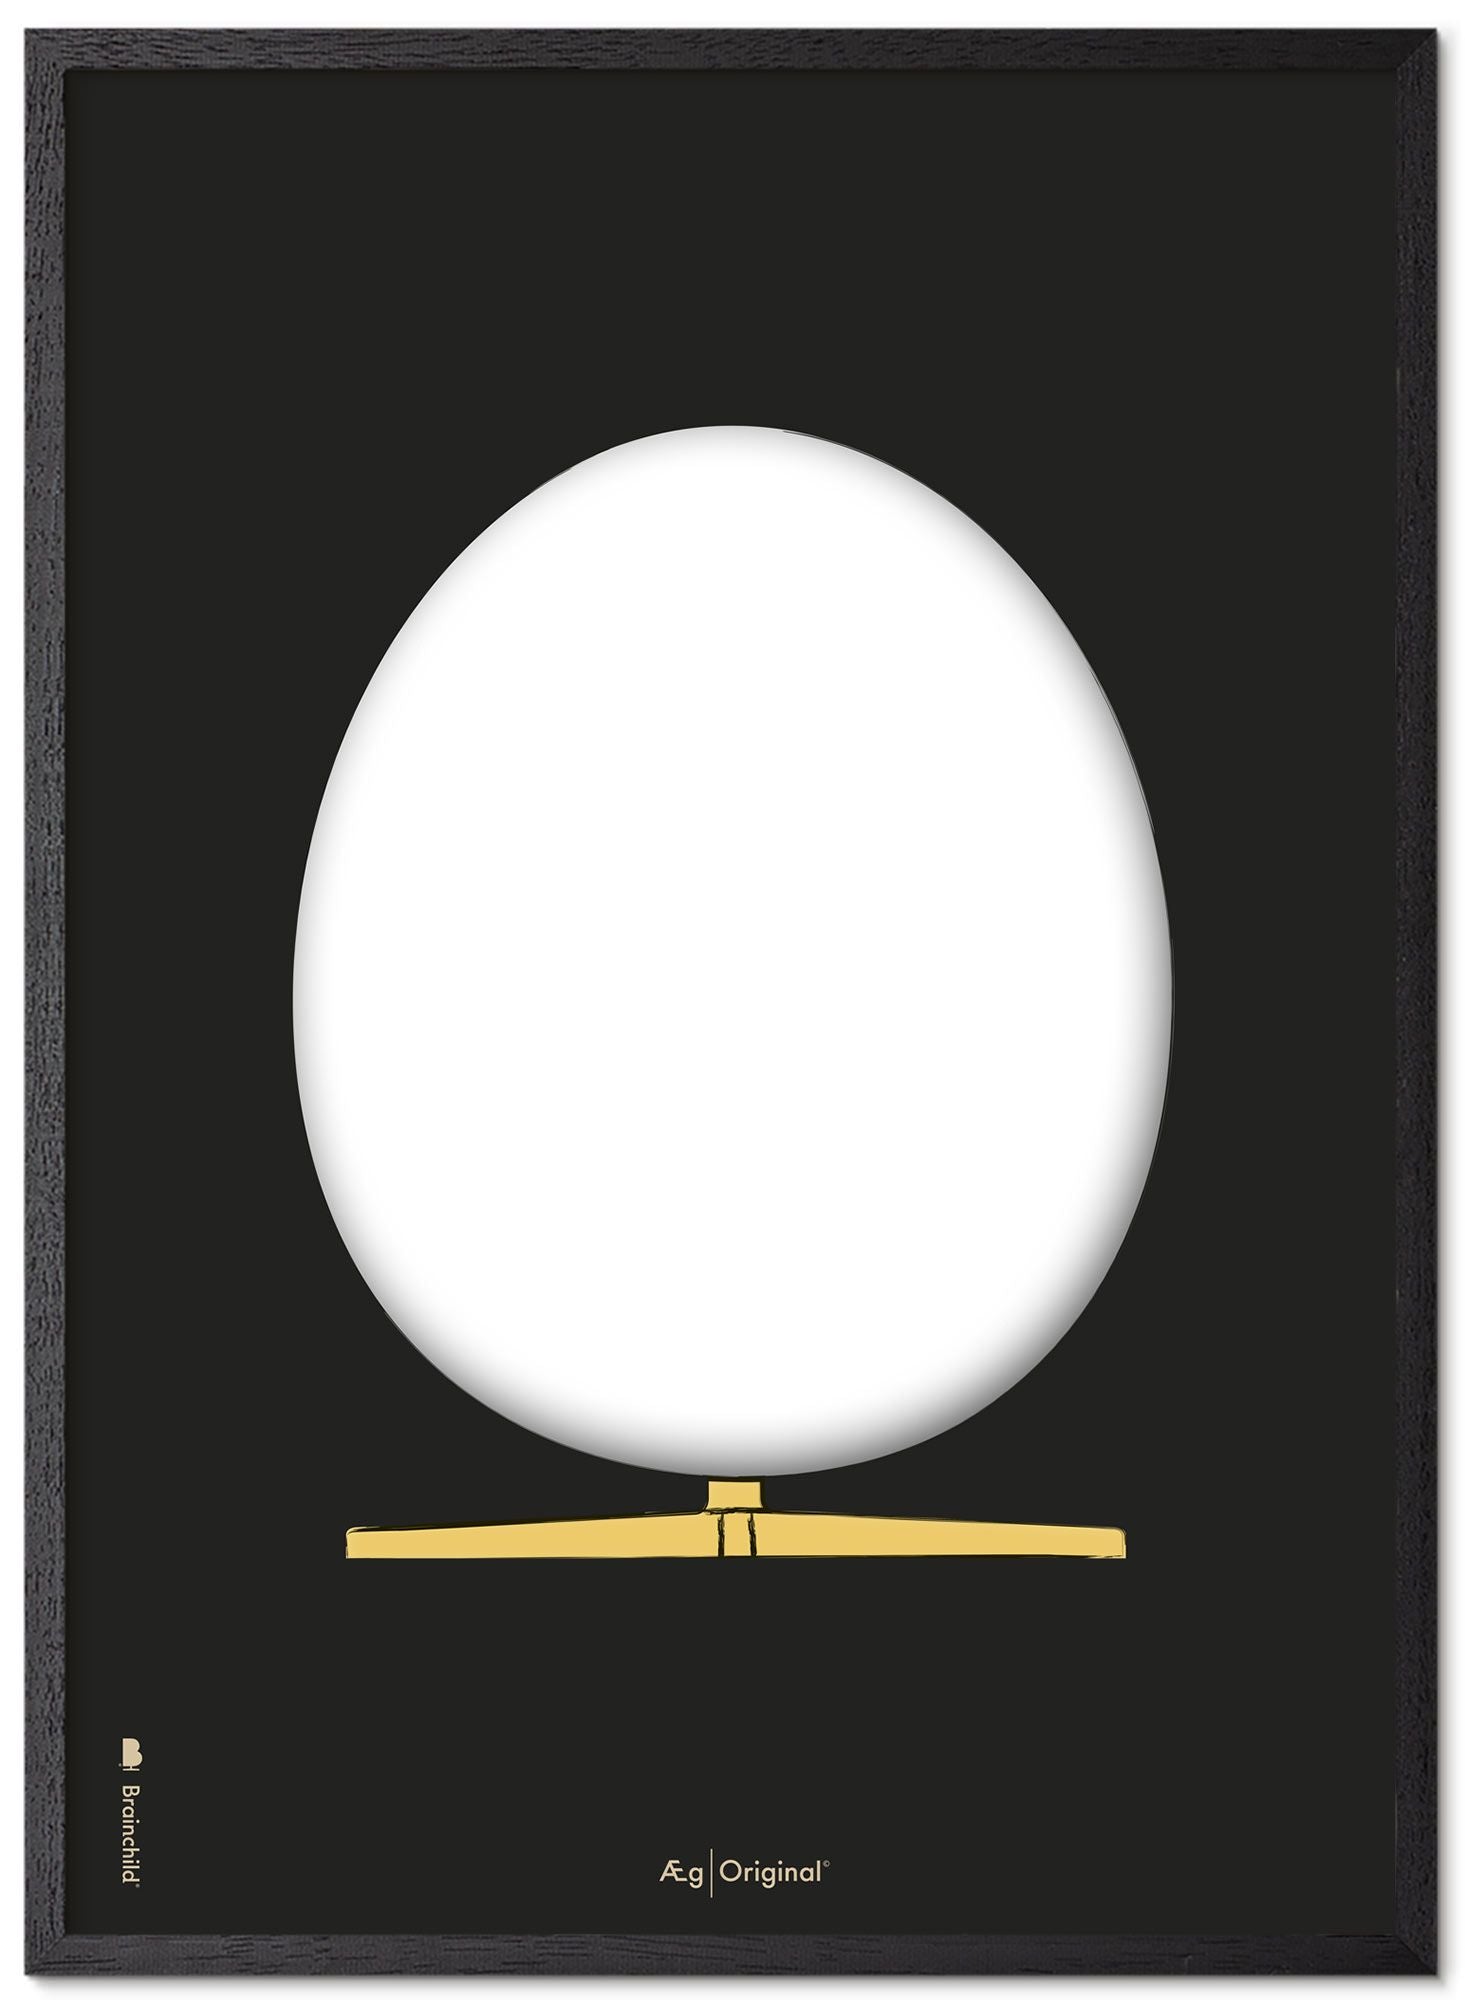 Prepare el marco de póster de boceto de diseño de huevo hecho de madera lacada negra 50x70 cm, fondo negro